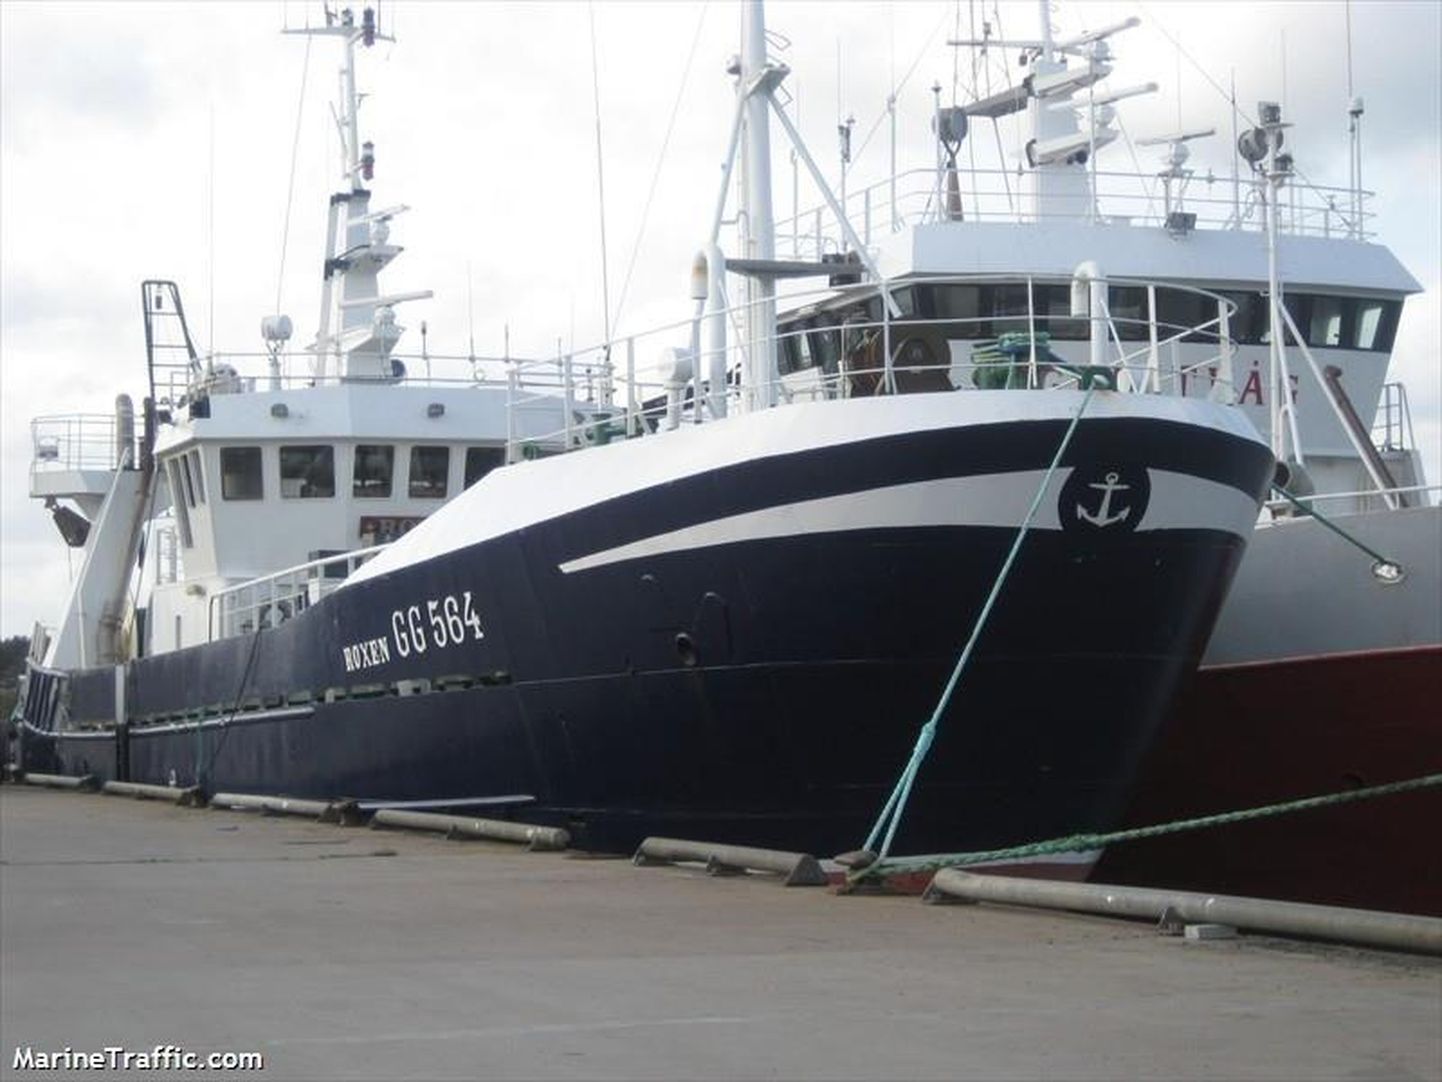 Soome lipu all sõitev kalalaev Roxen kuulub Haapsalu firmale Morobell. Venemaa võimud pidasid laeva 10. mail Kaliningradi lähedal kinni, kahtlustatuna ebaseaduslikus kalapüügis Venemaa majandusvööndis.